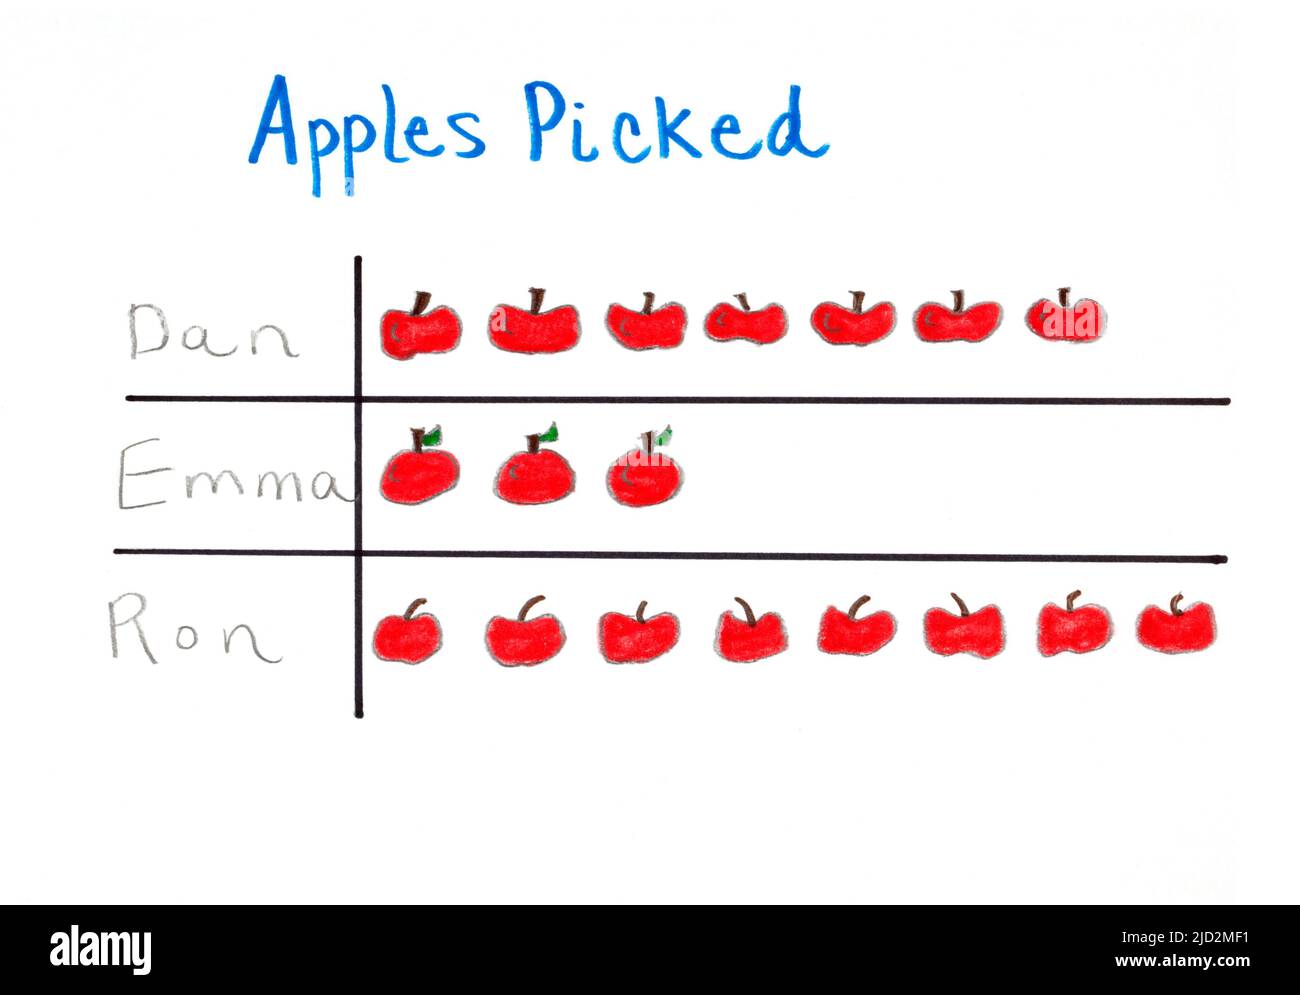 Ein Piktogramm oder Piktogramm eines Kindes und ein Diagramm, das einen Datensatz der Anzahl der Äpfel anzeigt, die von drei Personen gepflückt wurden. Stockfoto